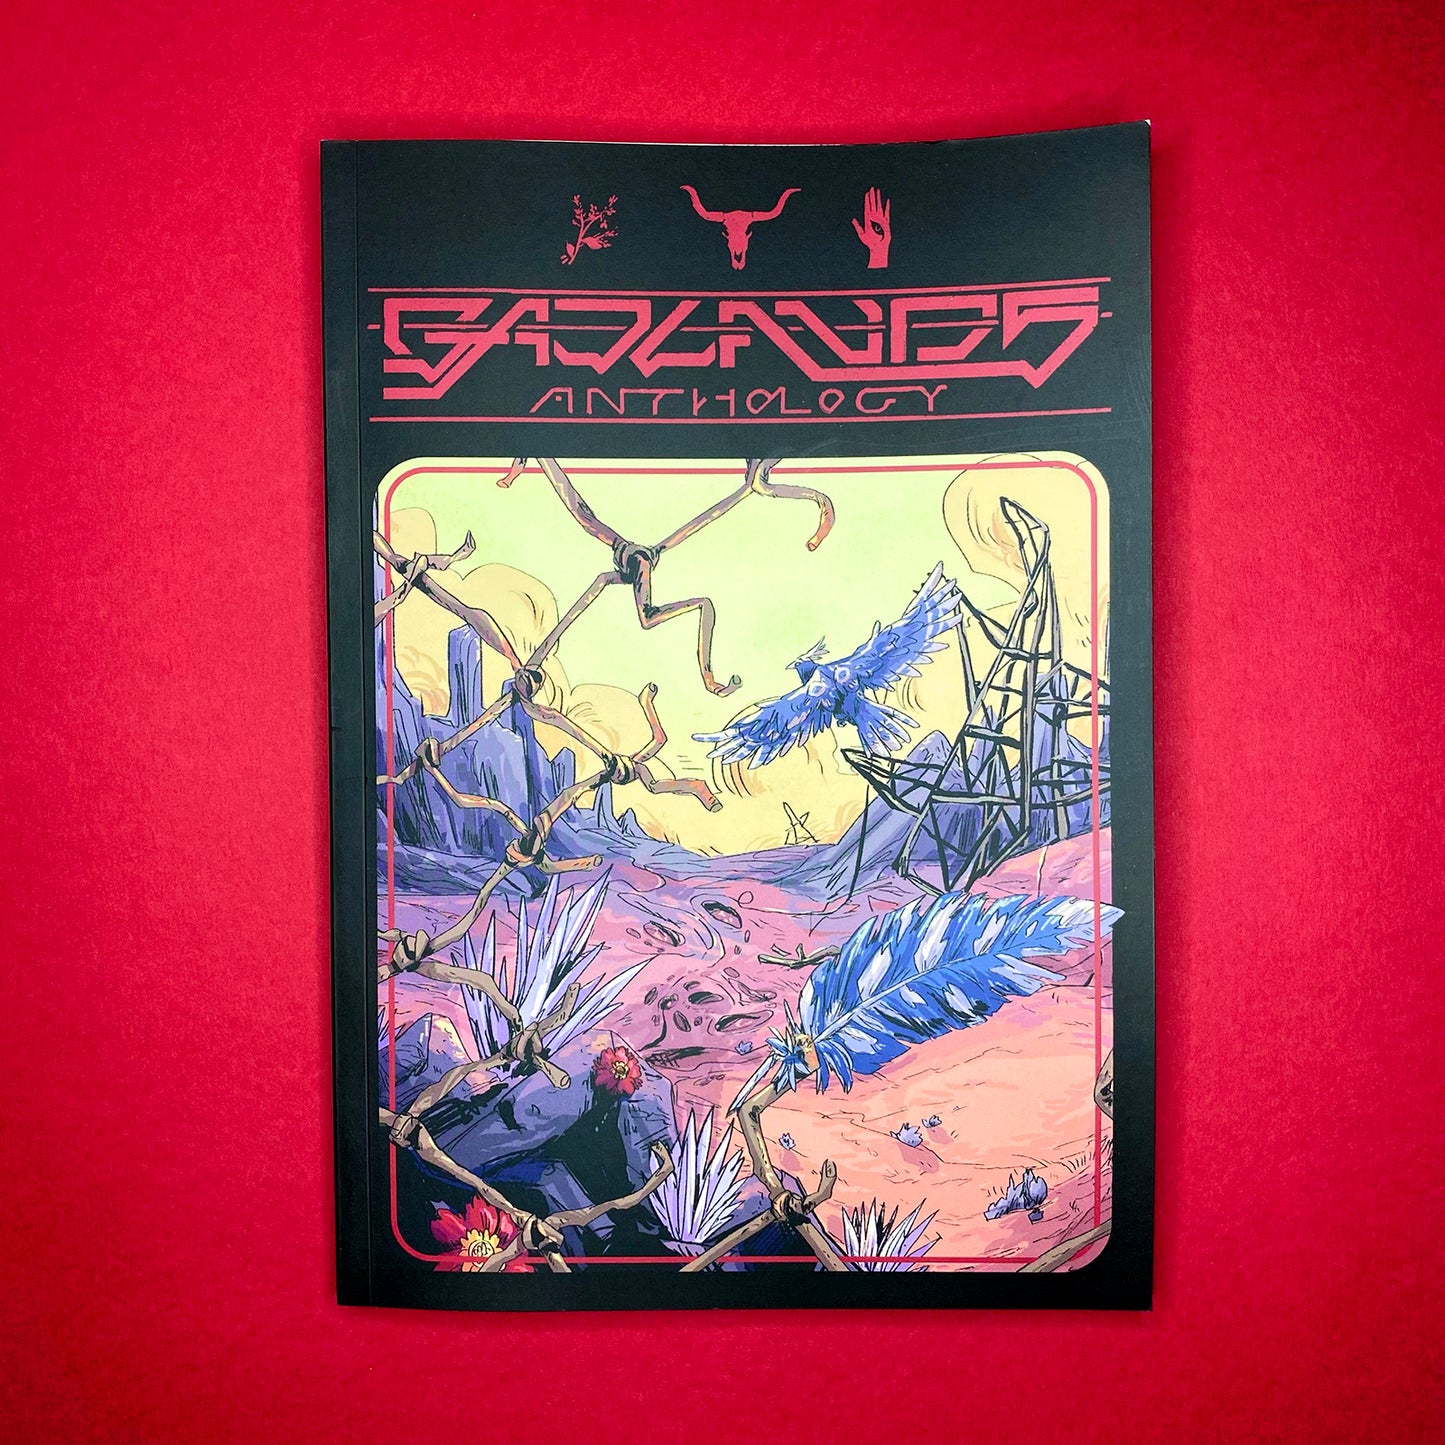 Badlands Anthology